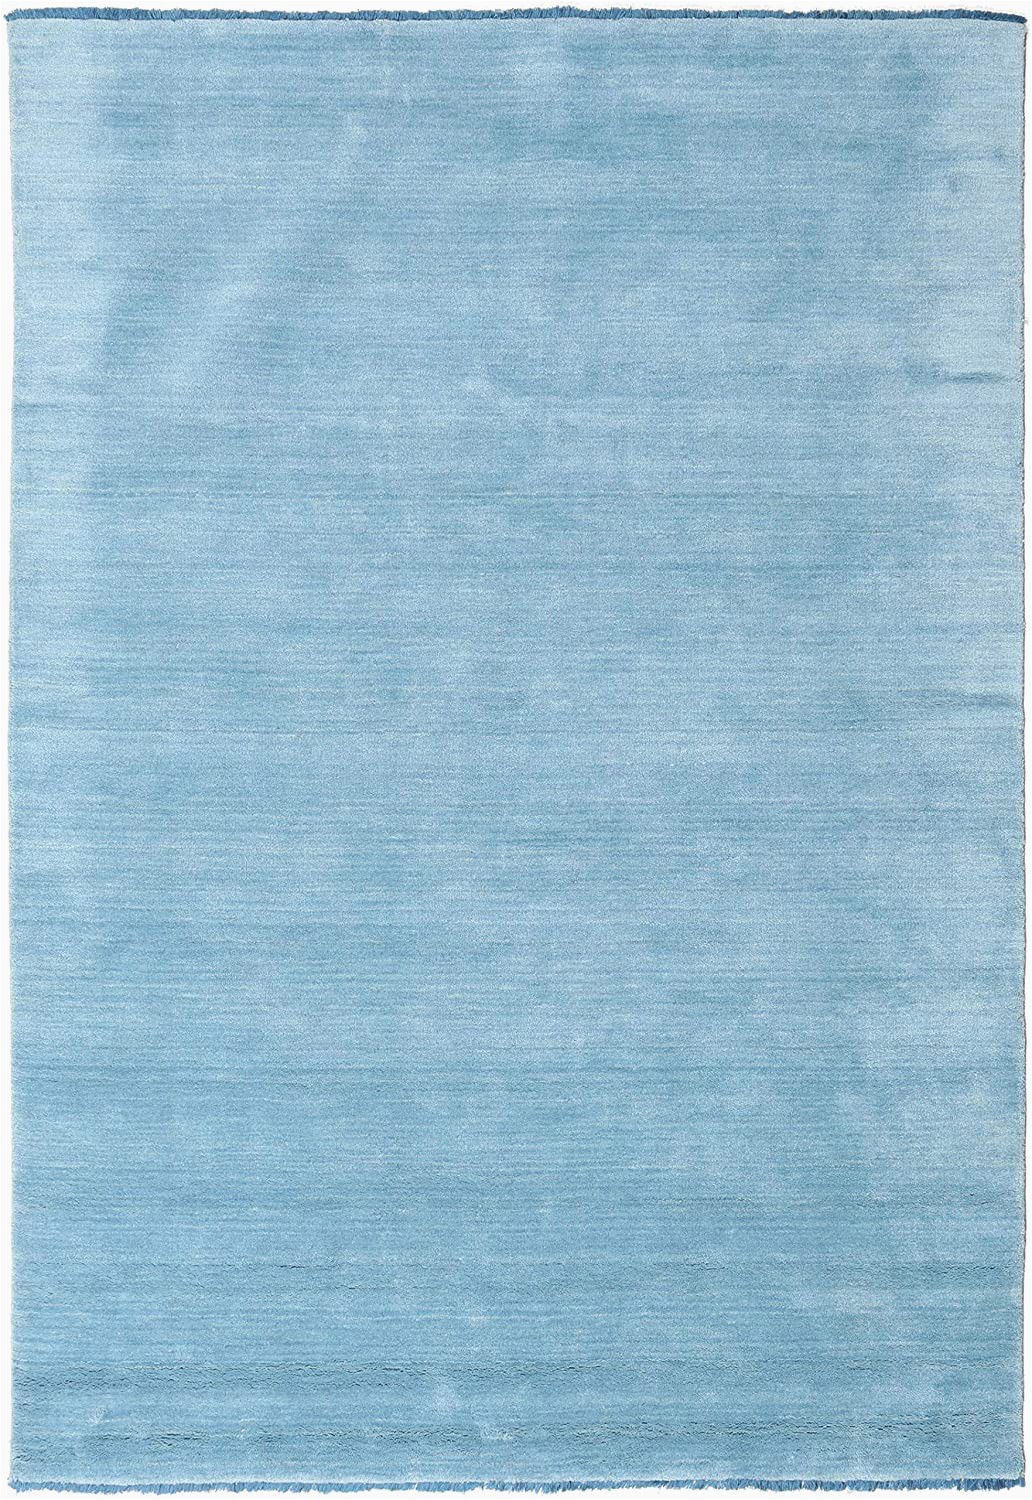 Blue Rug with Fringe Rugvista Handloom Fringes Light Blue Rug 5 3"x7 7" 160×230 Cm Modern Carpet